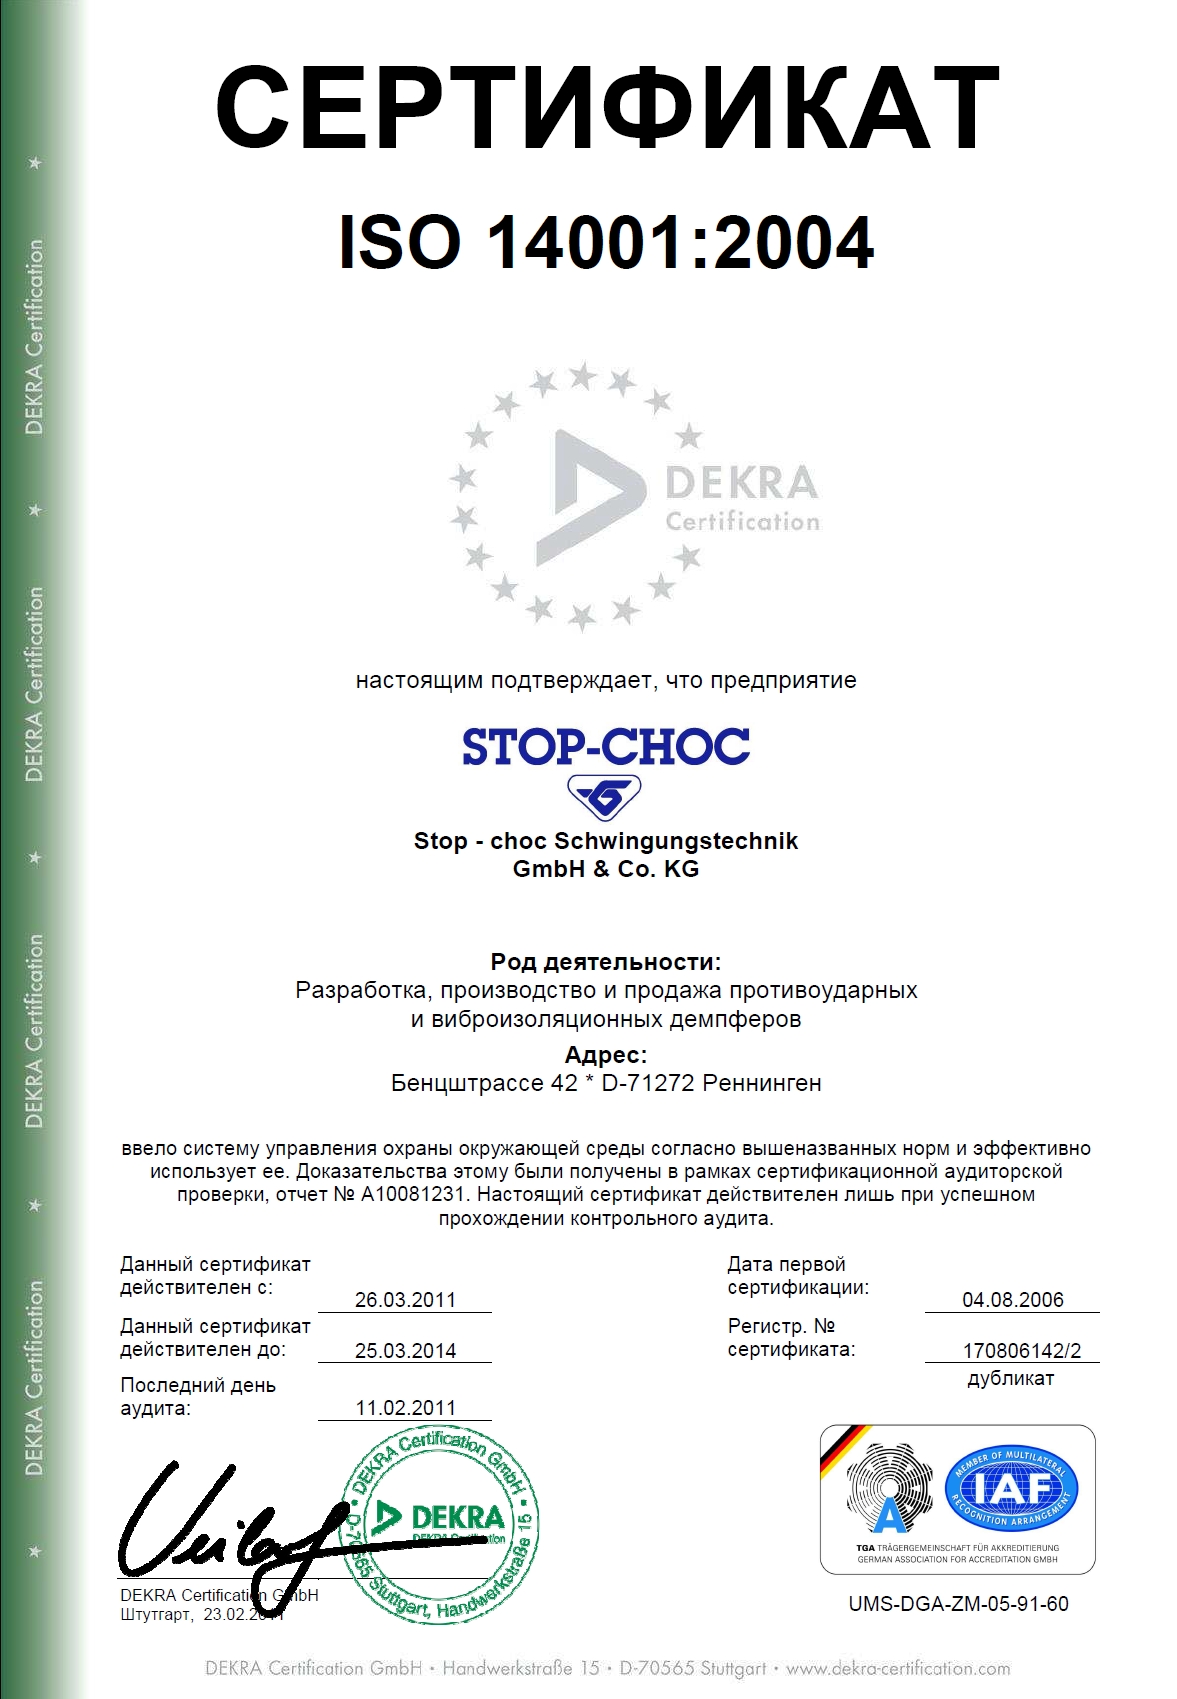 Сертификат на право реализации продукции Hutchinson Stop-Choc GmbH